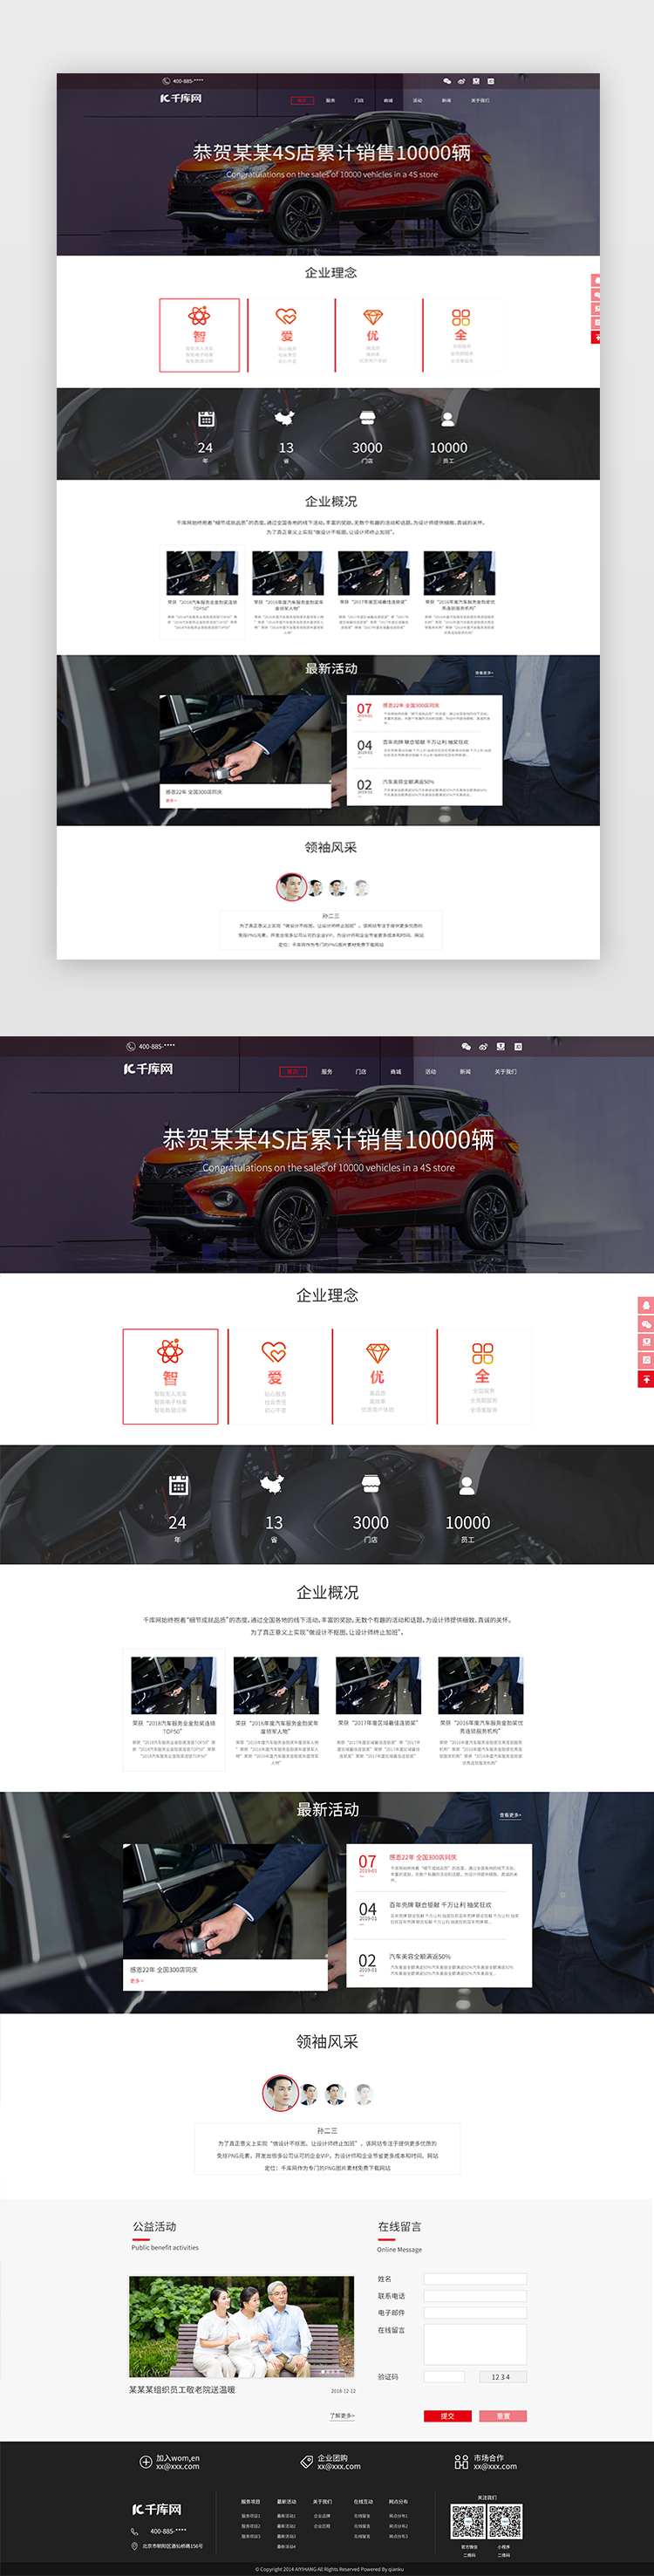 大气时尚汽车4S店汽车销售网站首页图片